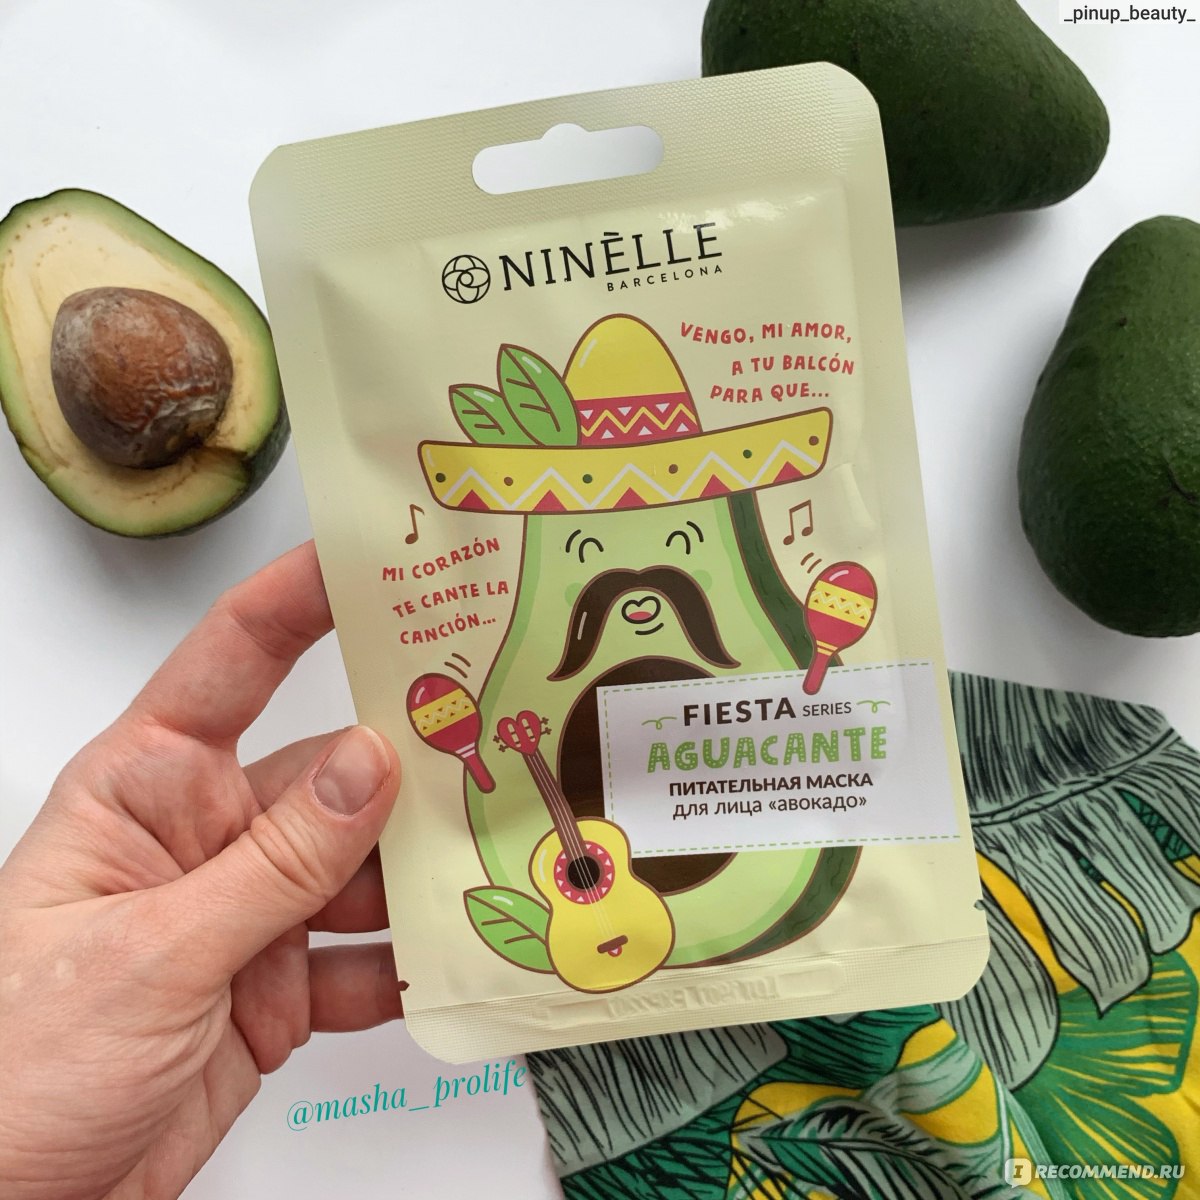 Хорошие бюджетные маски. Ninelle Fiesta питательная маска для лица авокадо, 20 гр. Ninelle уход за лицом маски питательная авокадо.